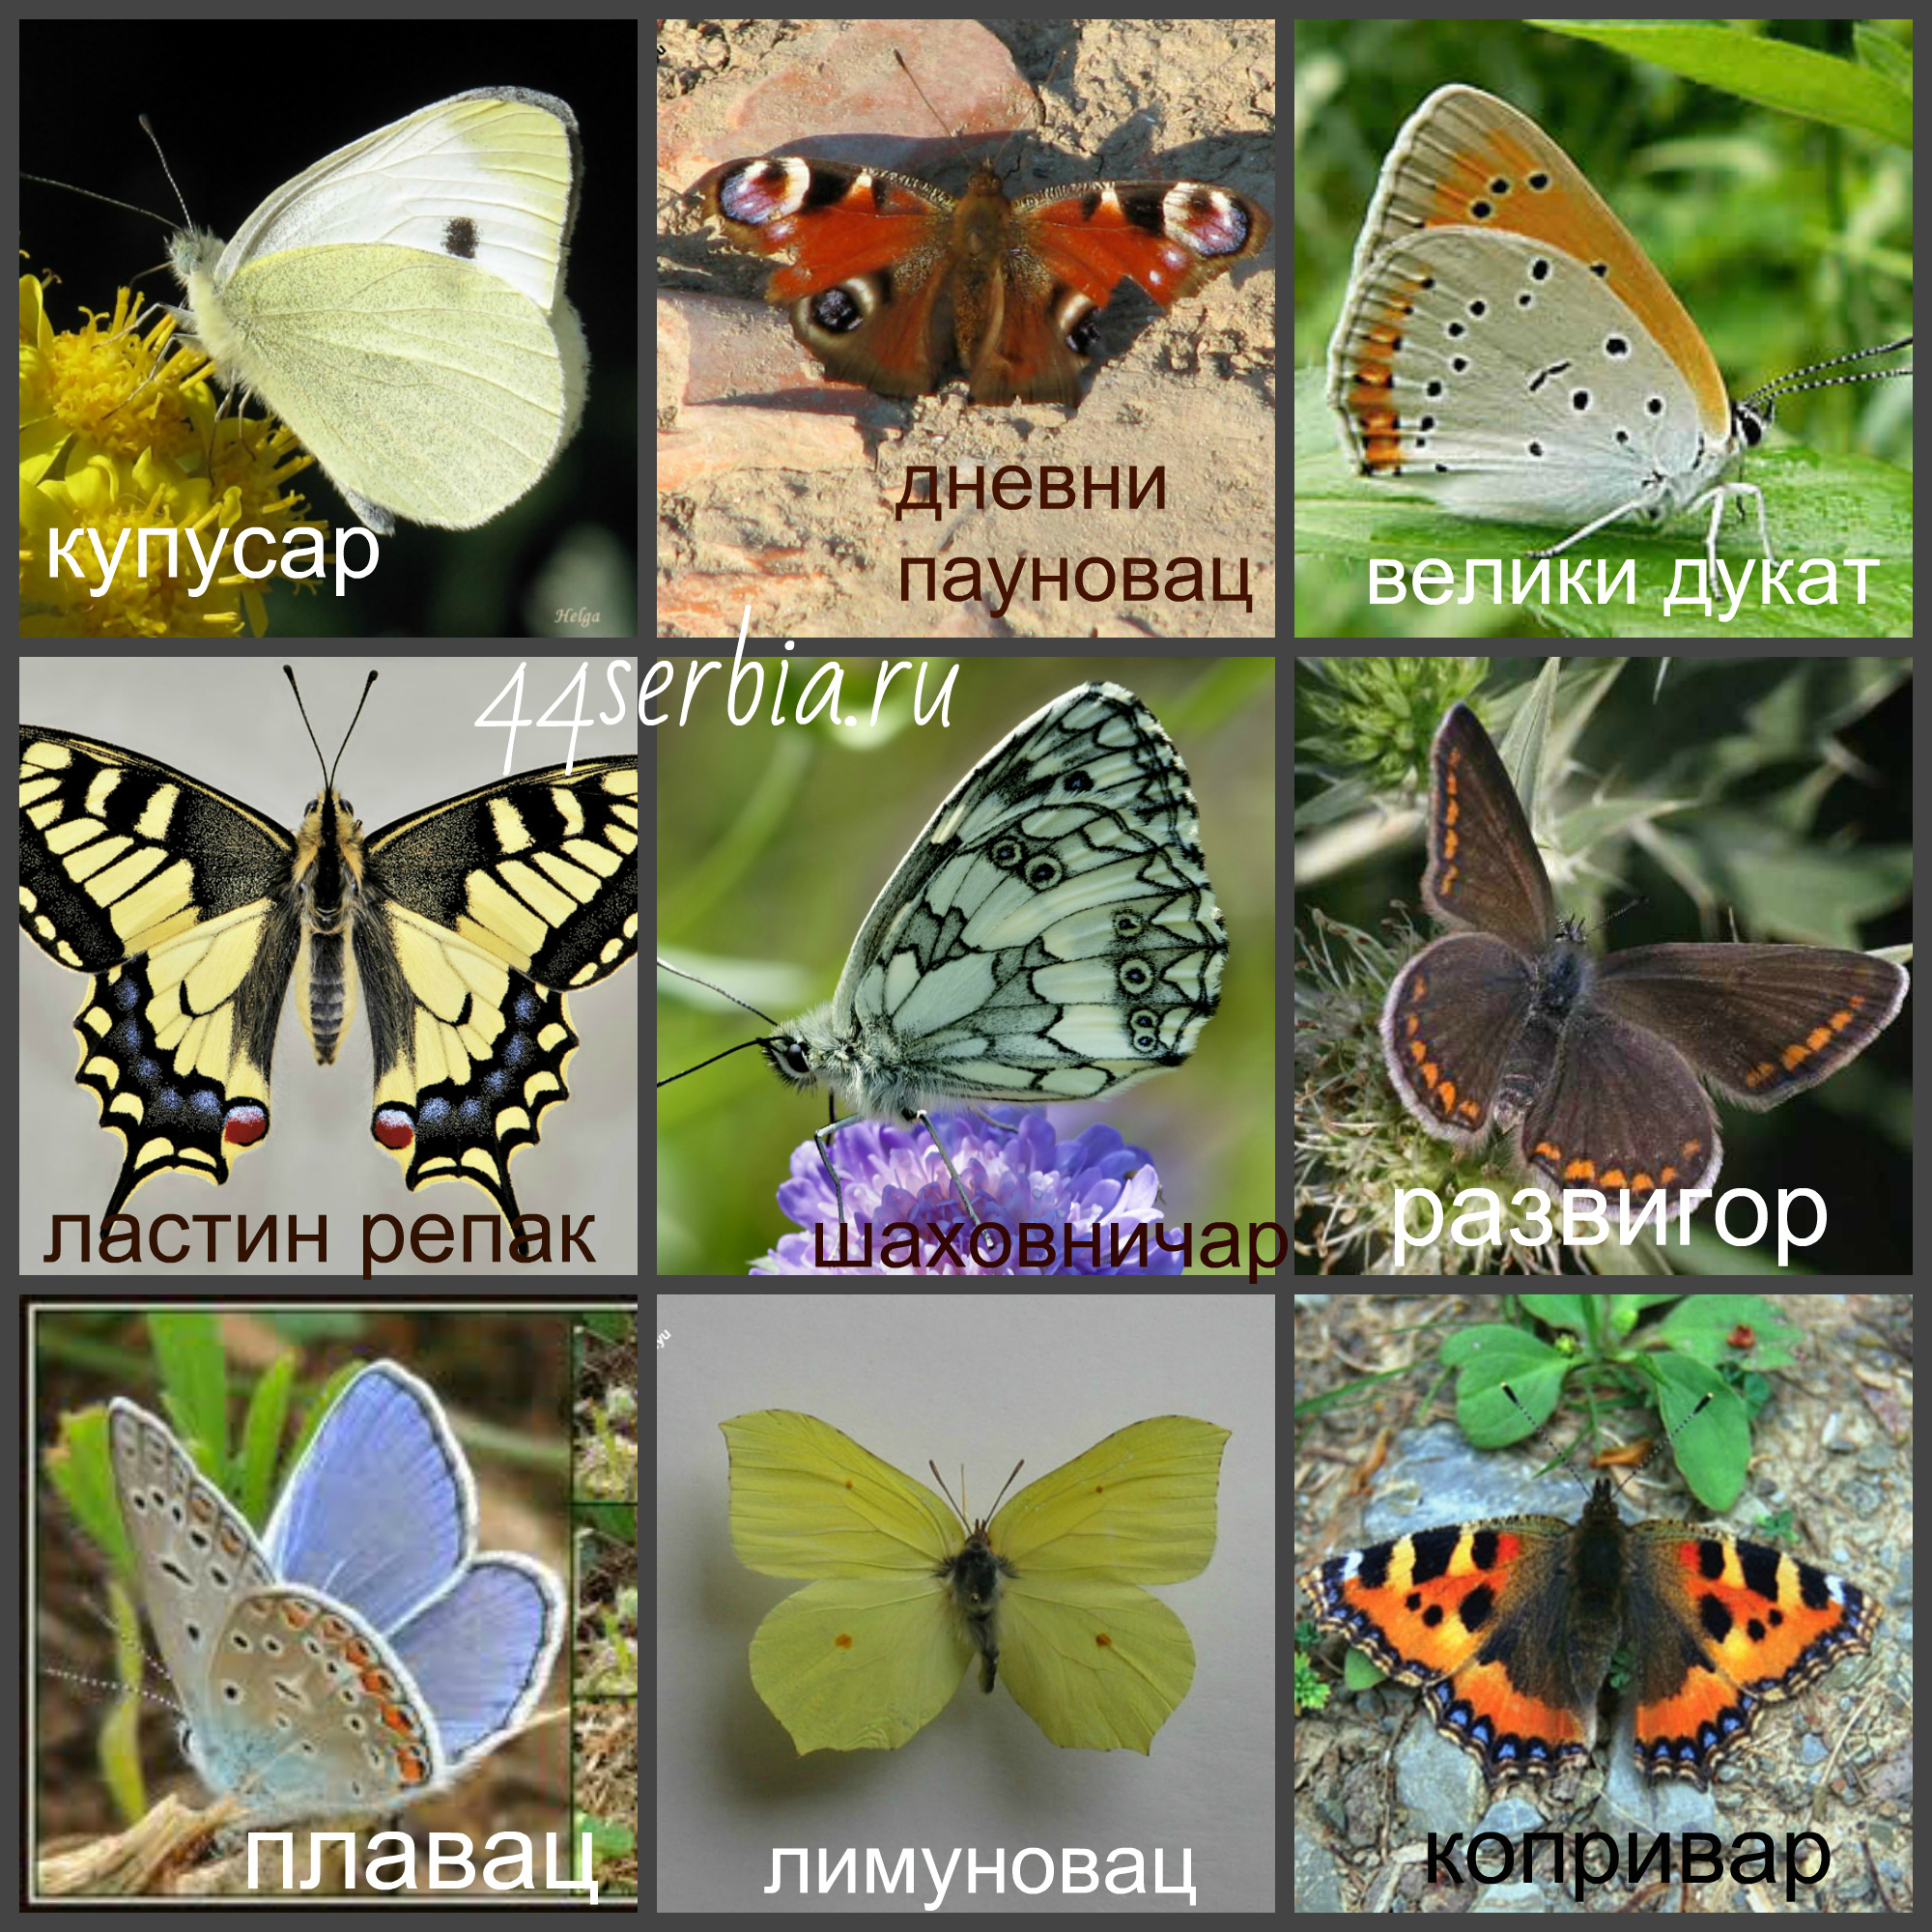 Название бабочек для детей. Виды бабочек. Название разных бабочек. Виды бабочек с названиями. Расцветки бабочек.